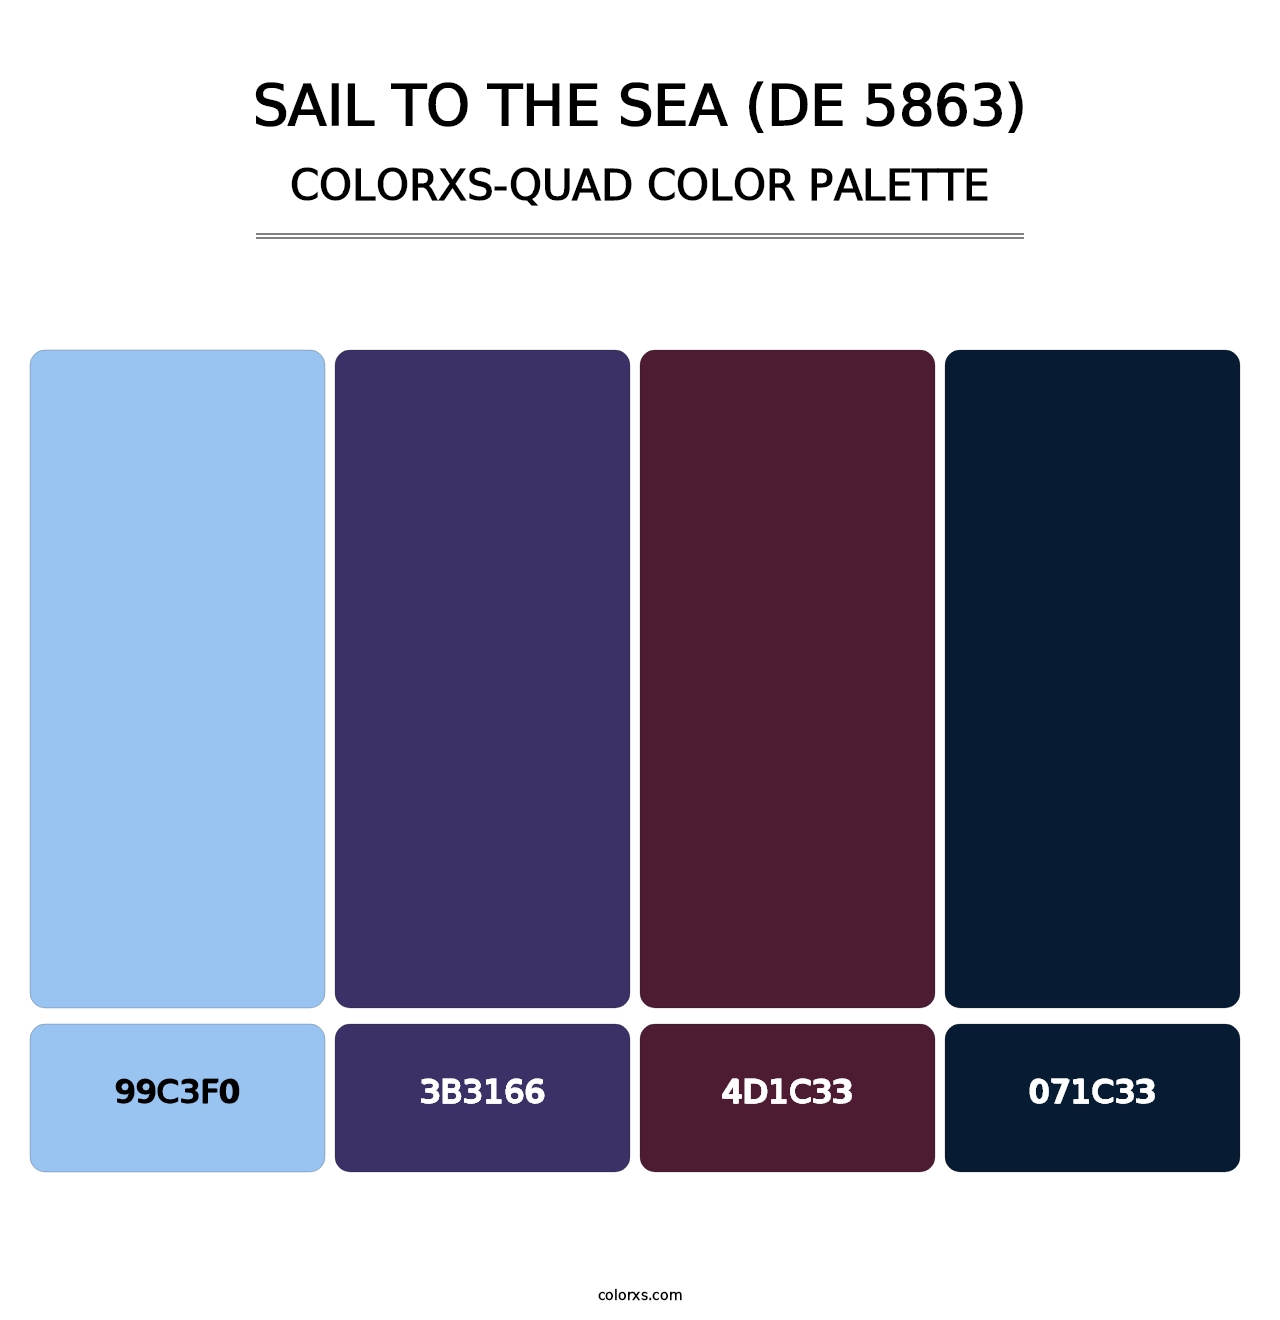 Sail to the Sea (DE 5863) - Colorxs Quad Palette